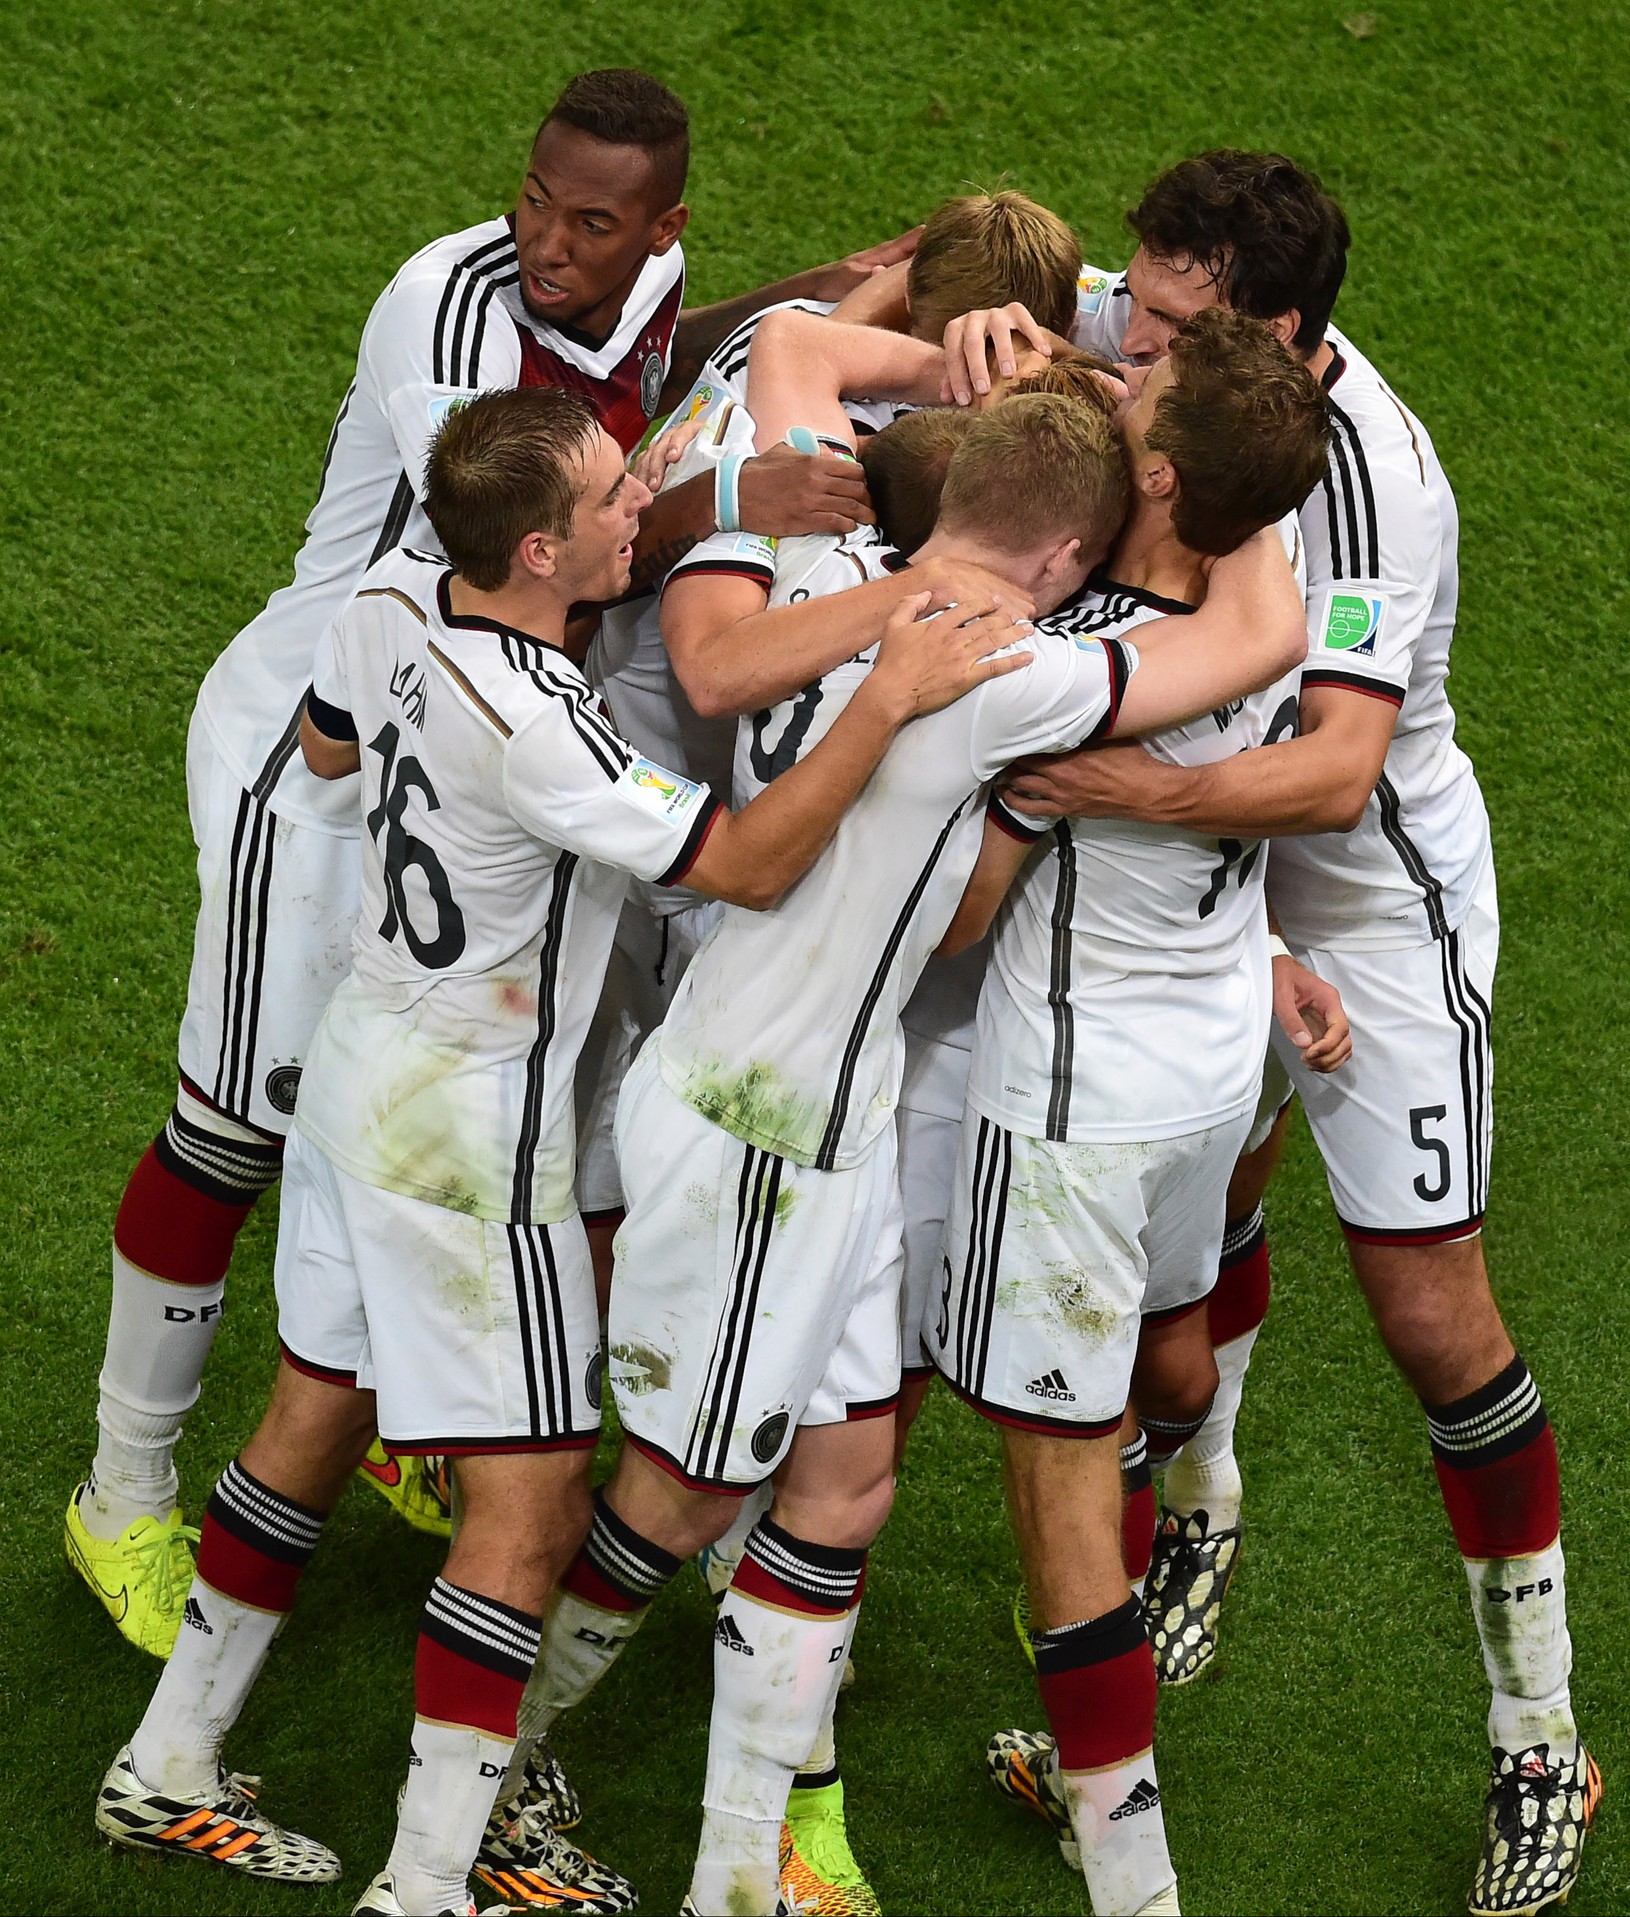 Nemecká radosť z víťazstva